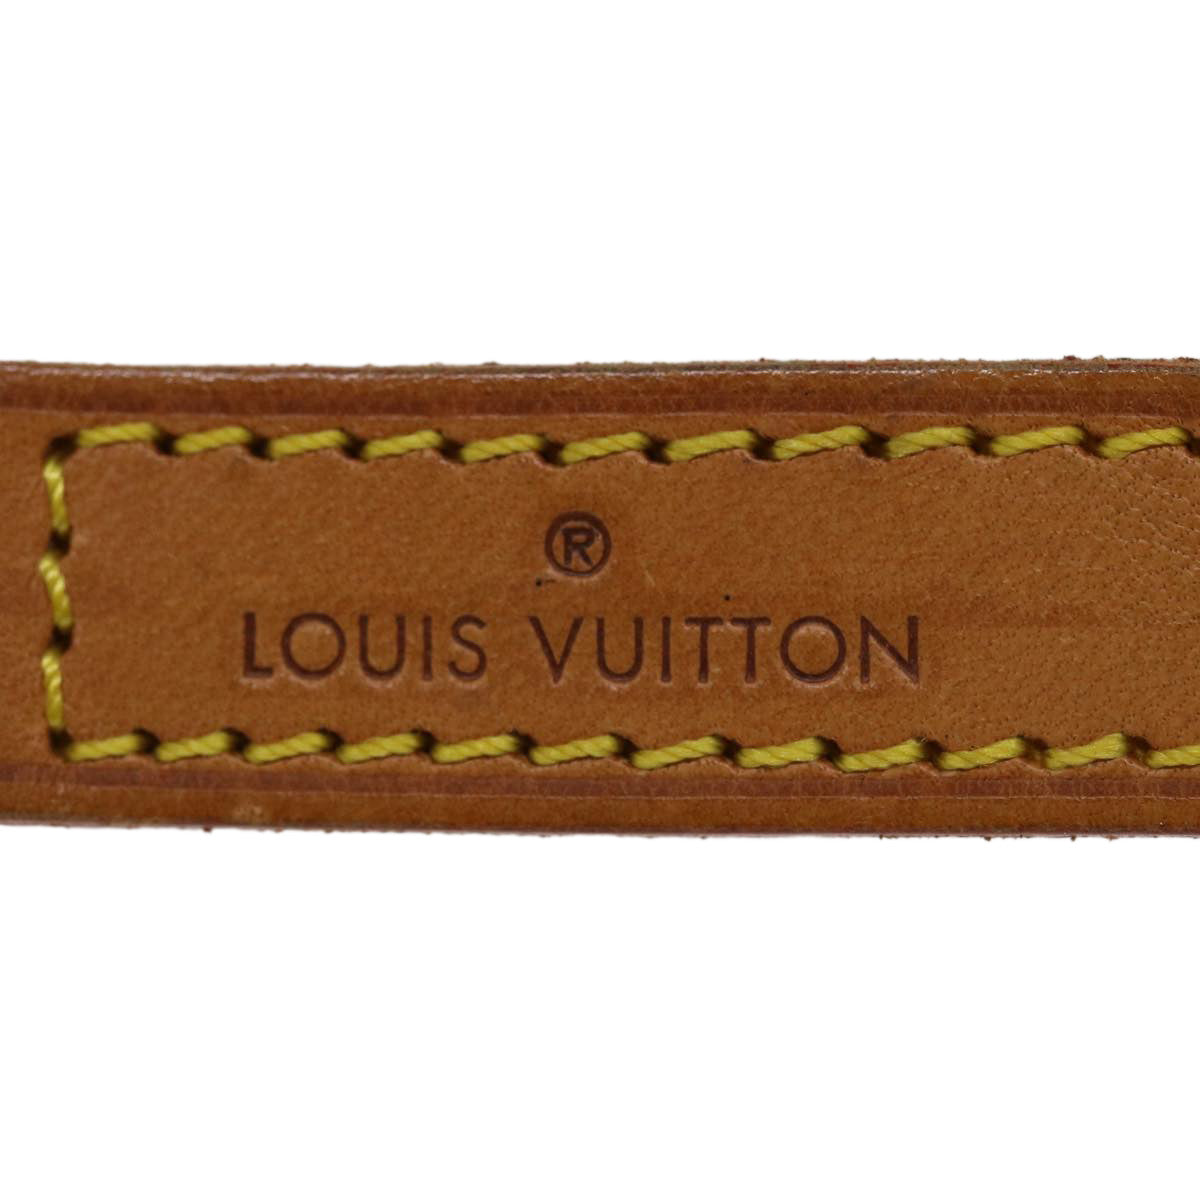 LOUIS VUITTON Shoulder Strap Leather 35.4"" Beige LV Auth 36810